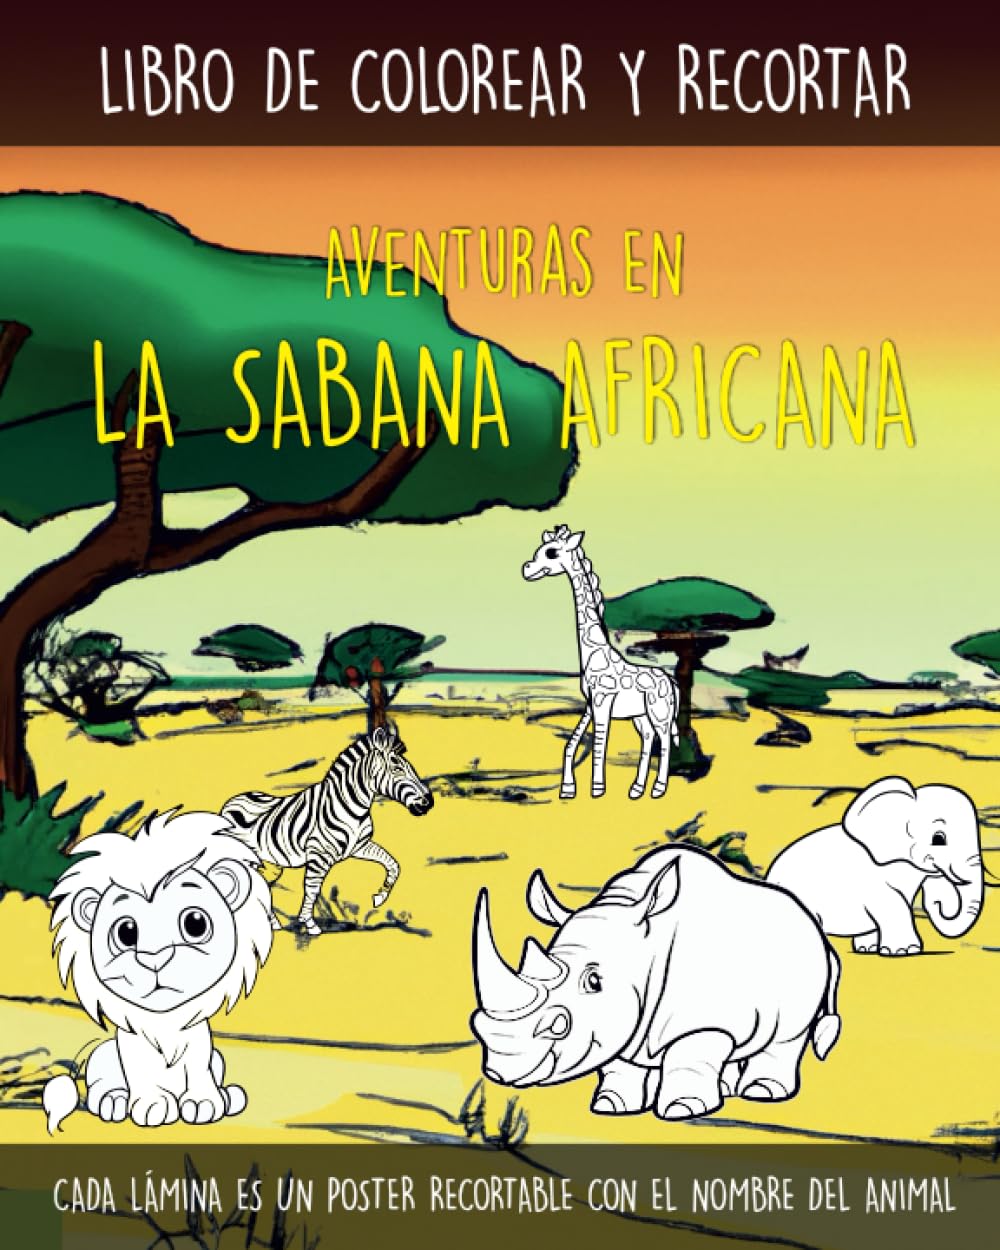 Libro: Libro de colorear y recortar – Aventuras en la sabana africana por Diber San